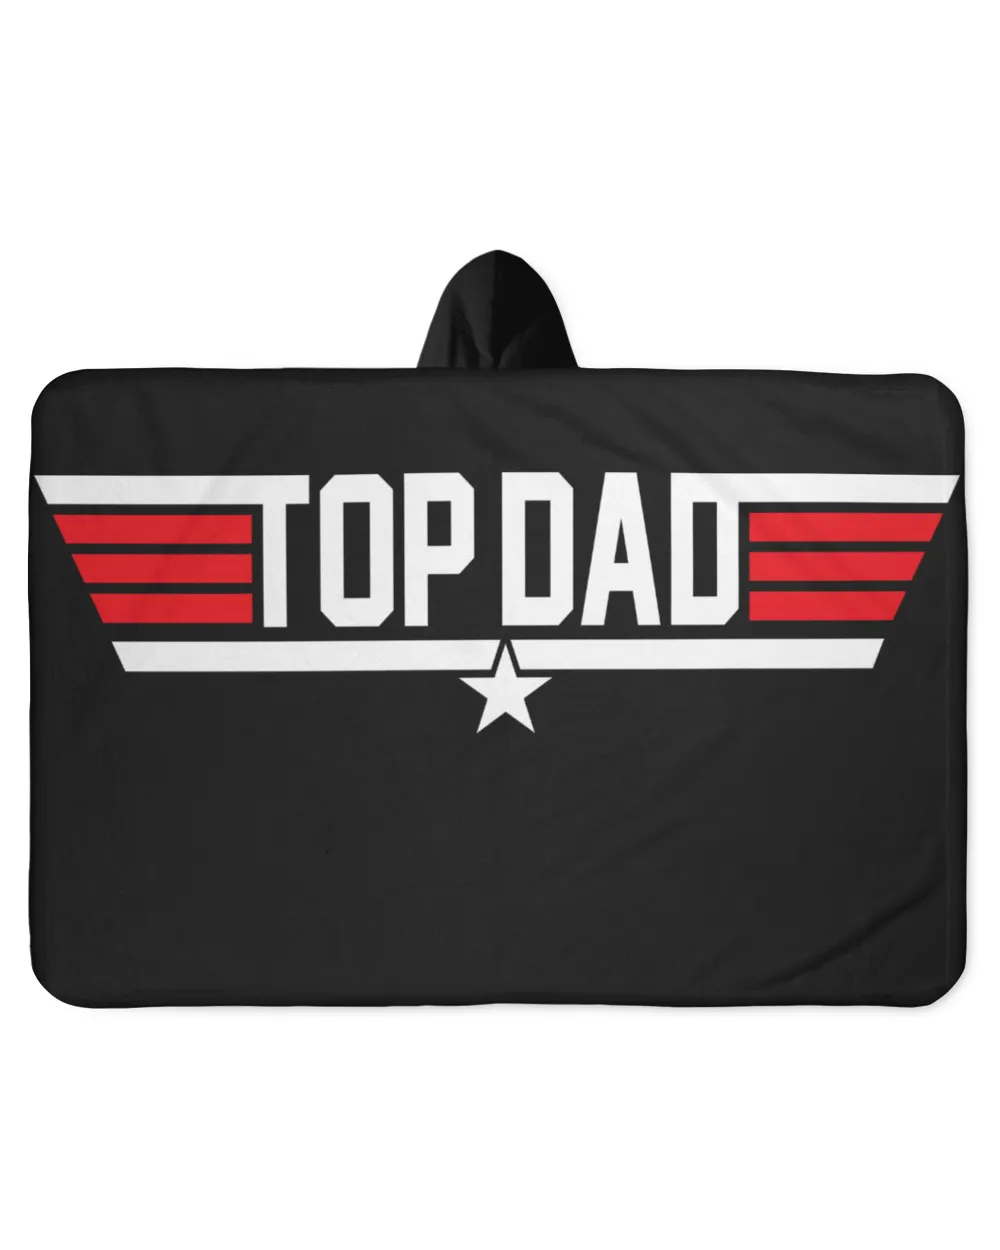 Top Dad Shirt